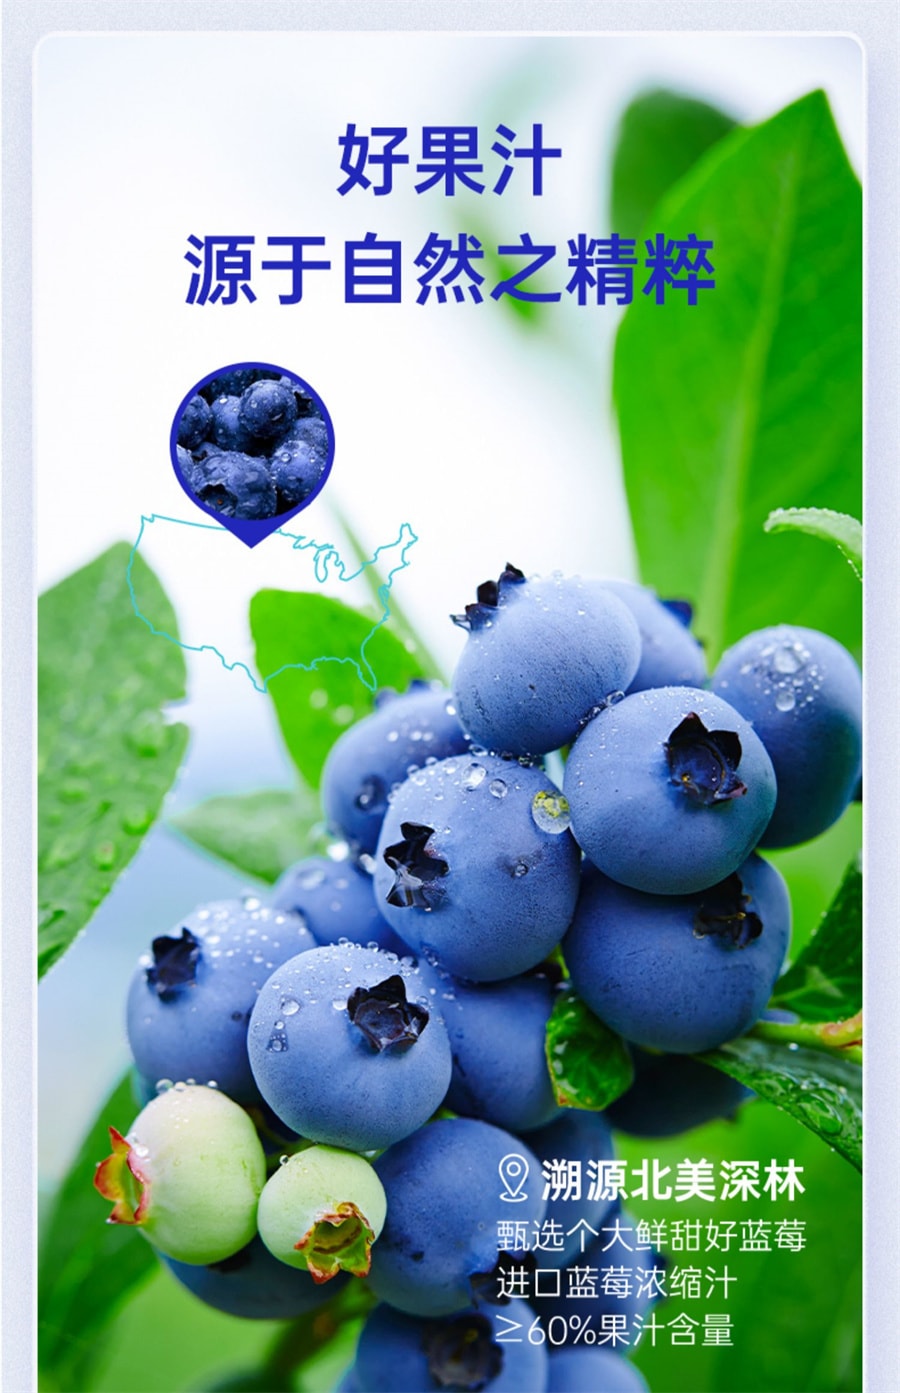 【中国直邮】英贝健  花青素蓝莓汁饮料纯浓缩原浆叶黄素脂果蔬汁  500ml/瓶